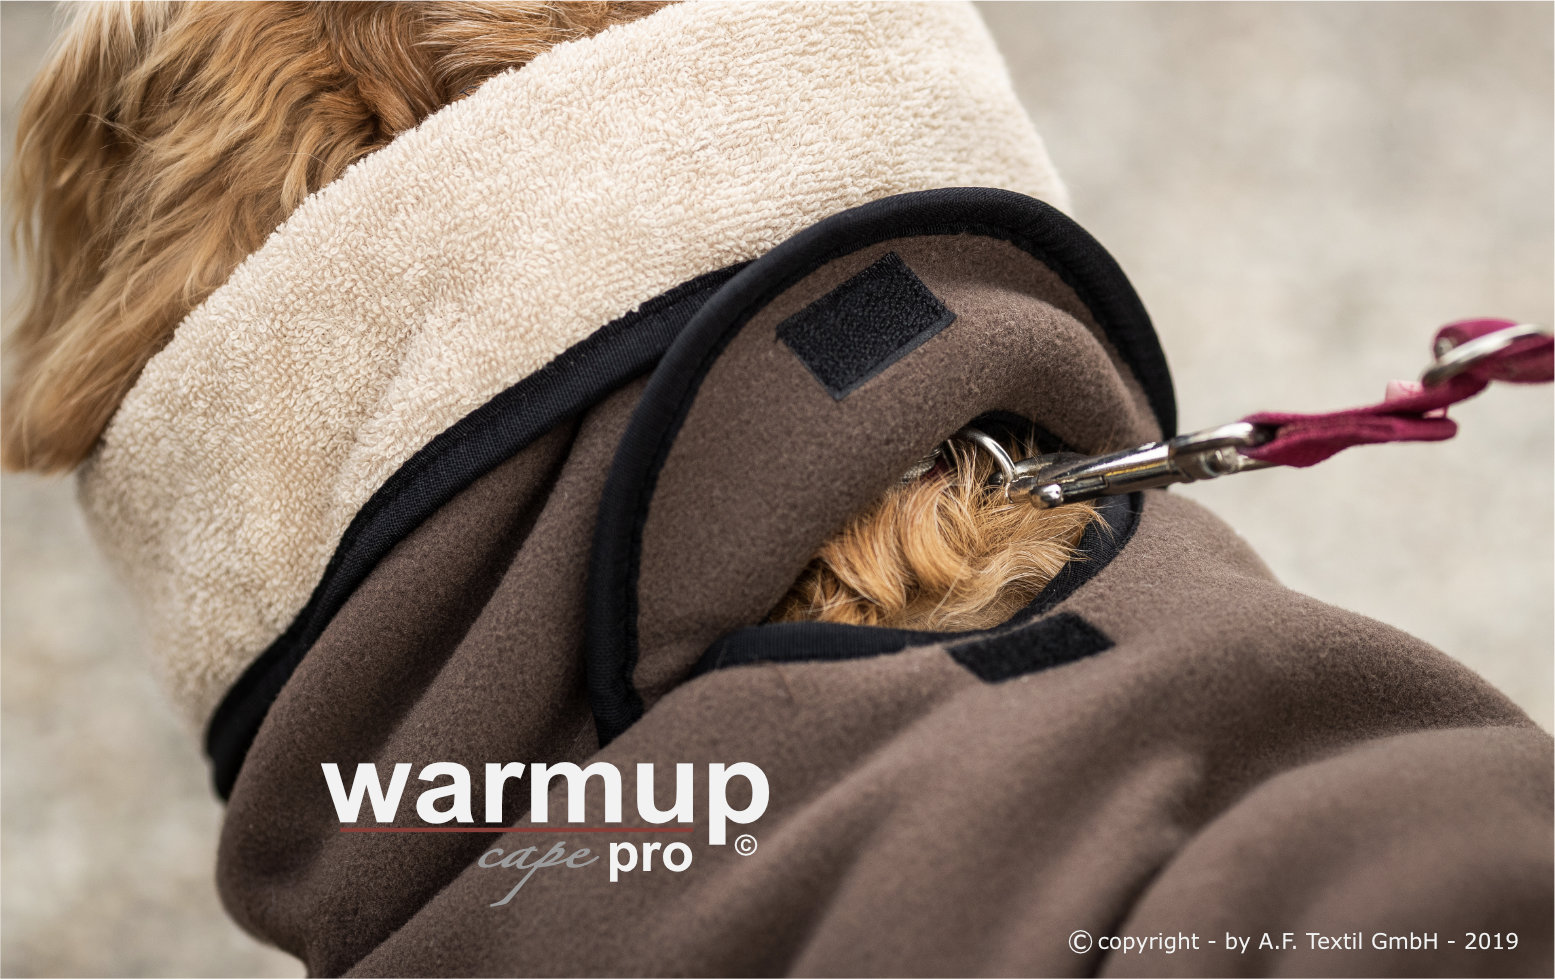 Warmup© cape pro mocca Mini